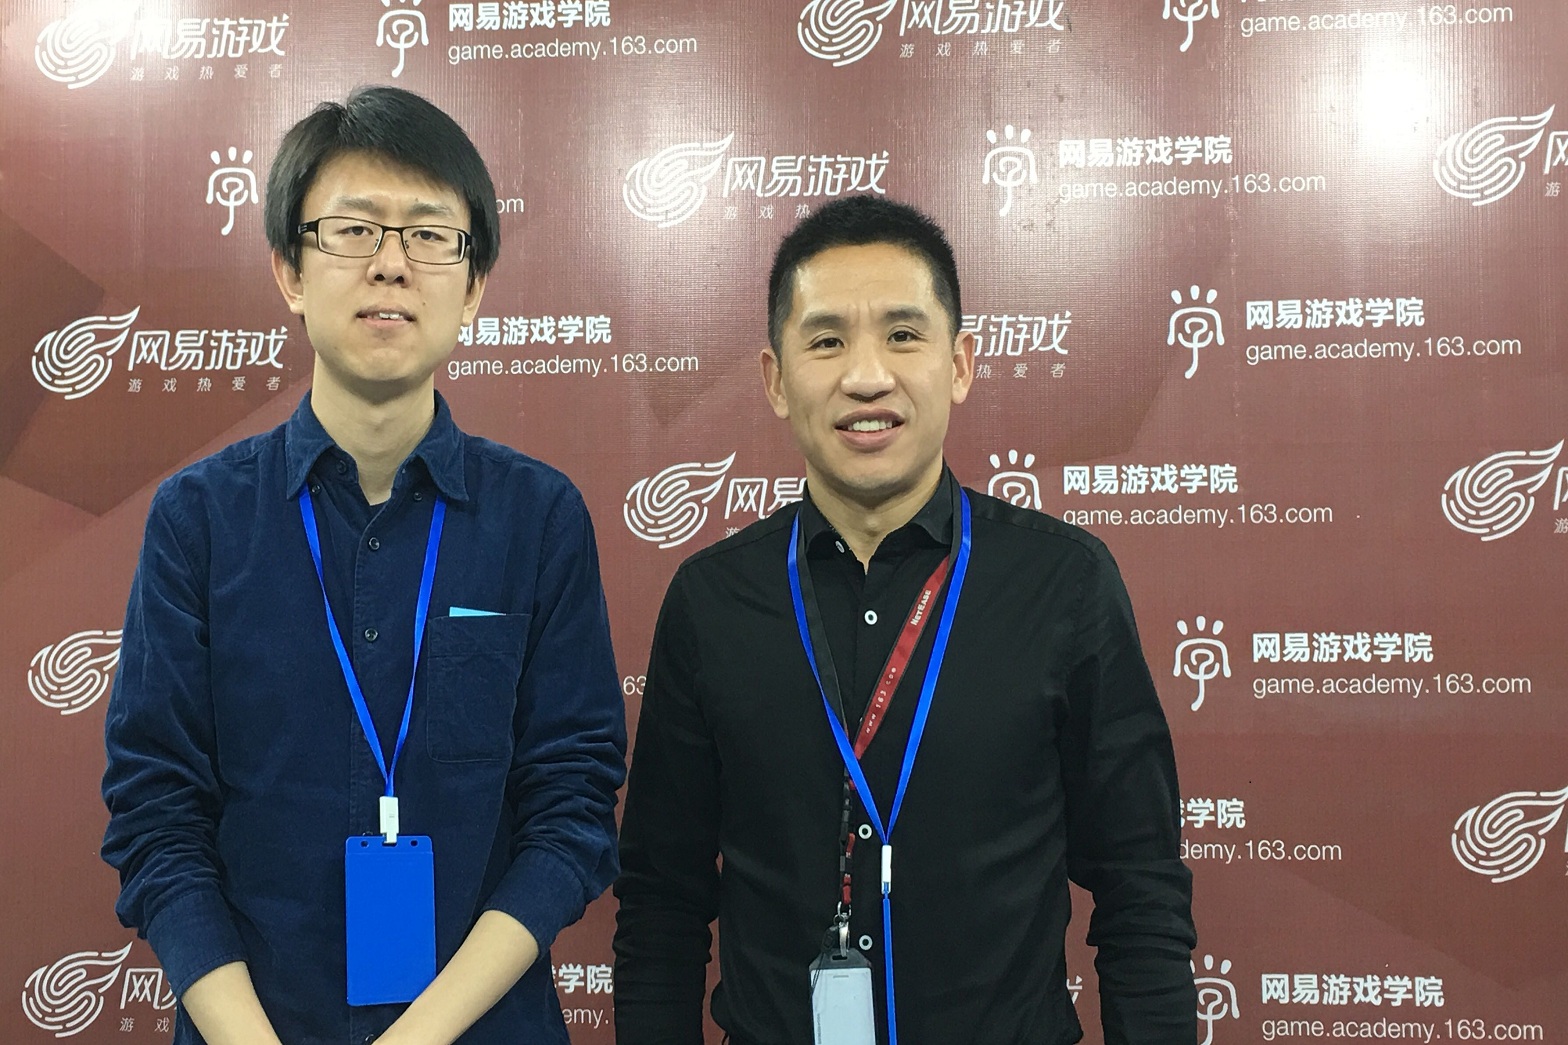 网易游戏学院院长文富俊接受媒体朋友的采访